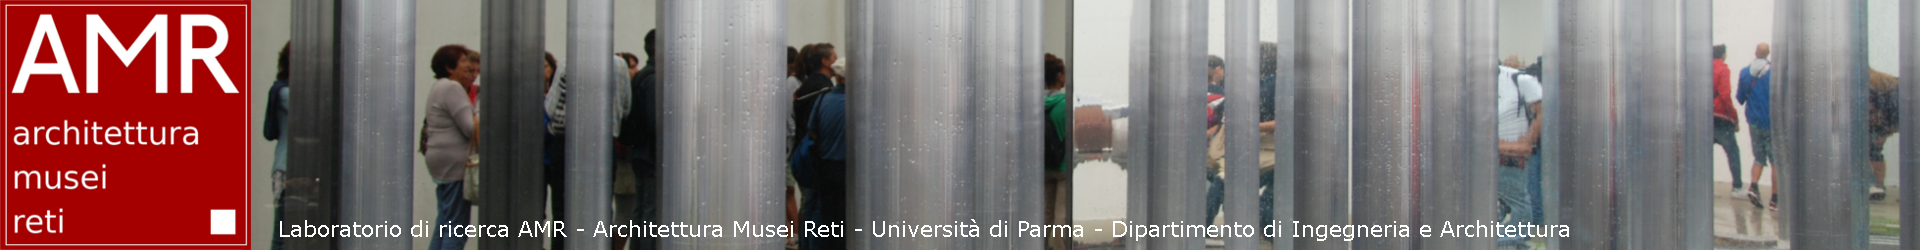 Convegno “Reti e programmi d’architettura” a Parma